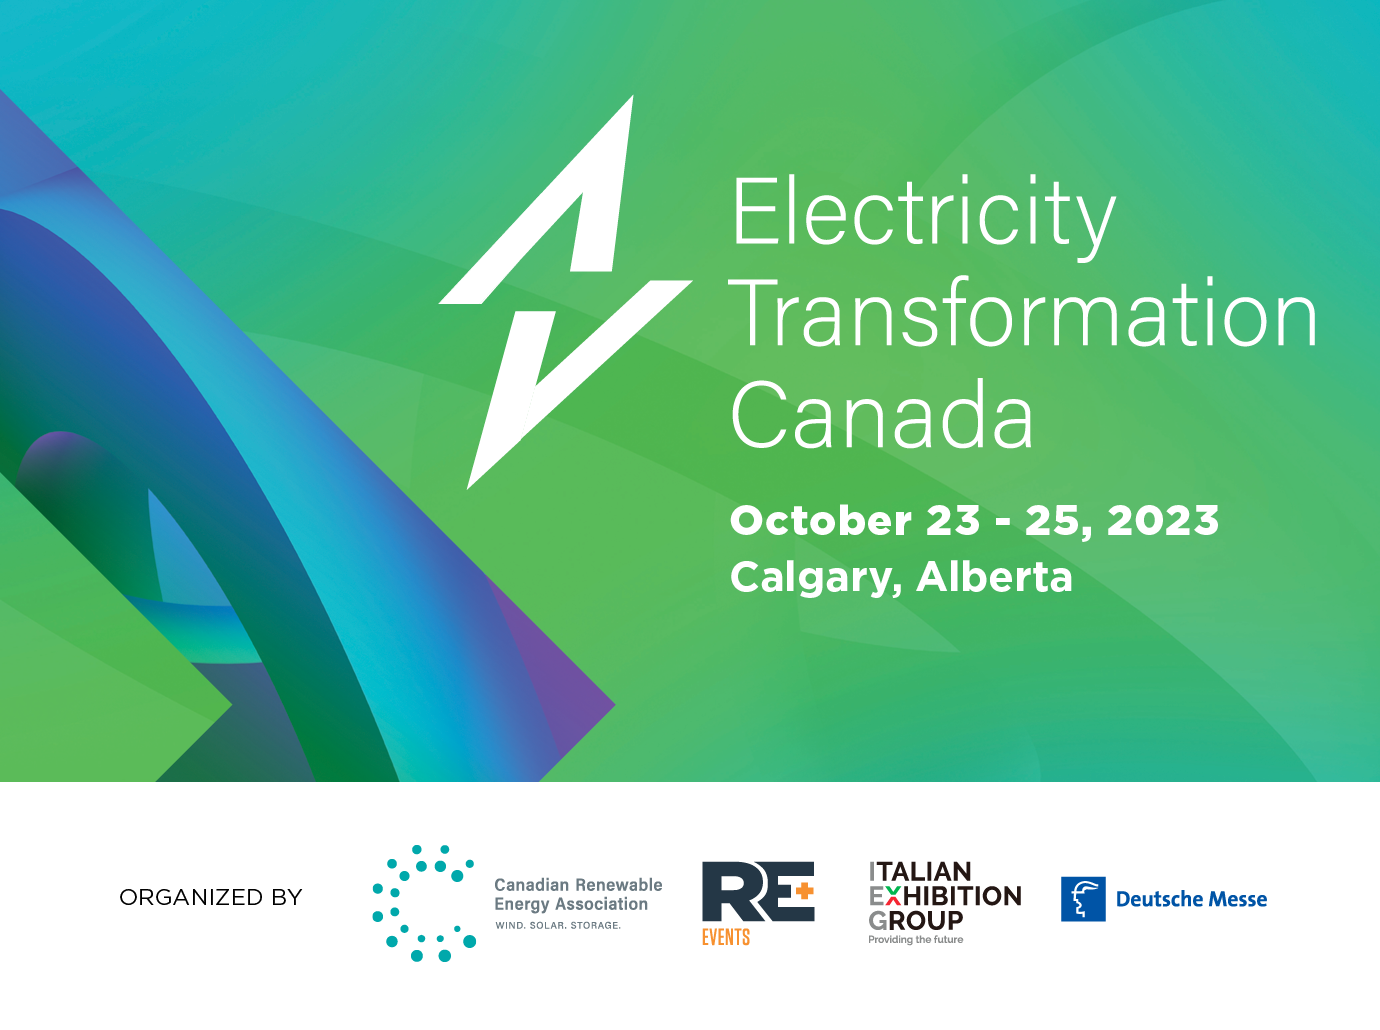 Electricity Transformation Canada 2023